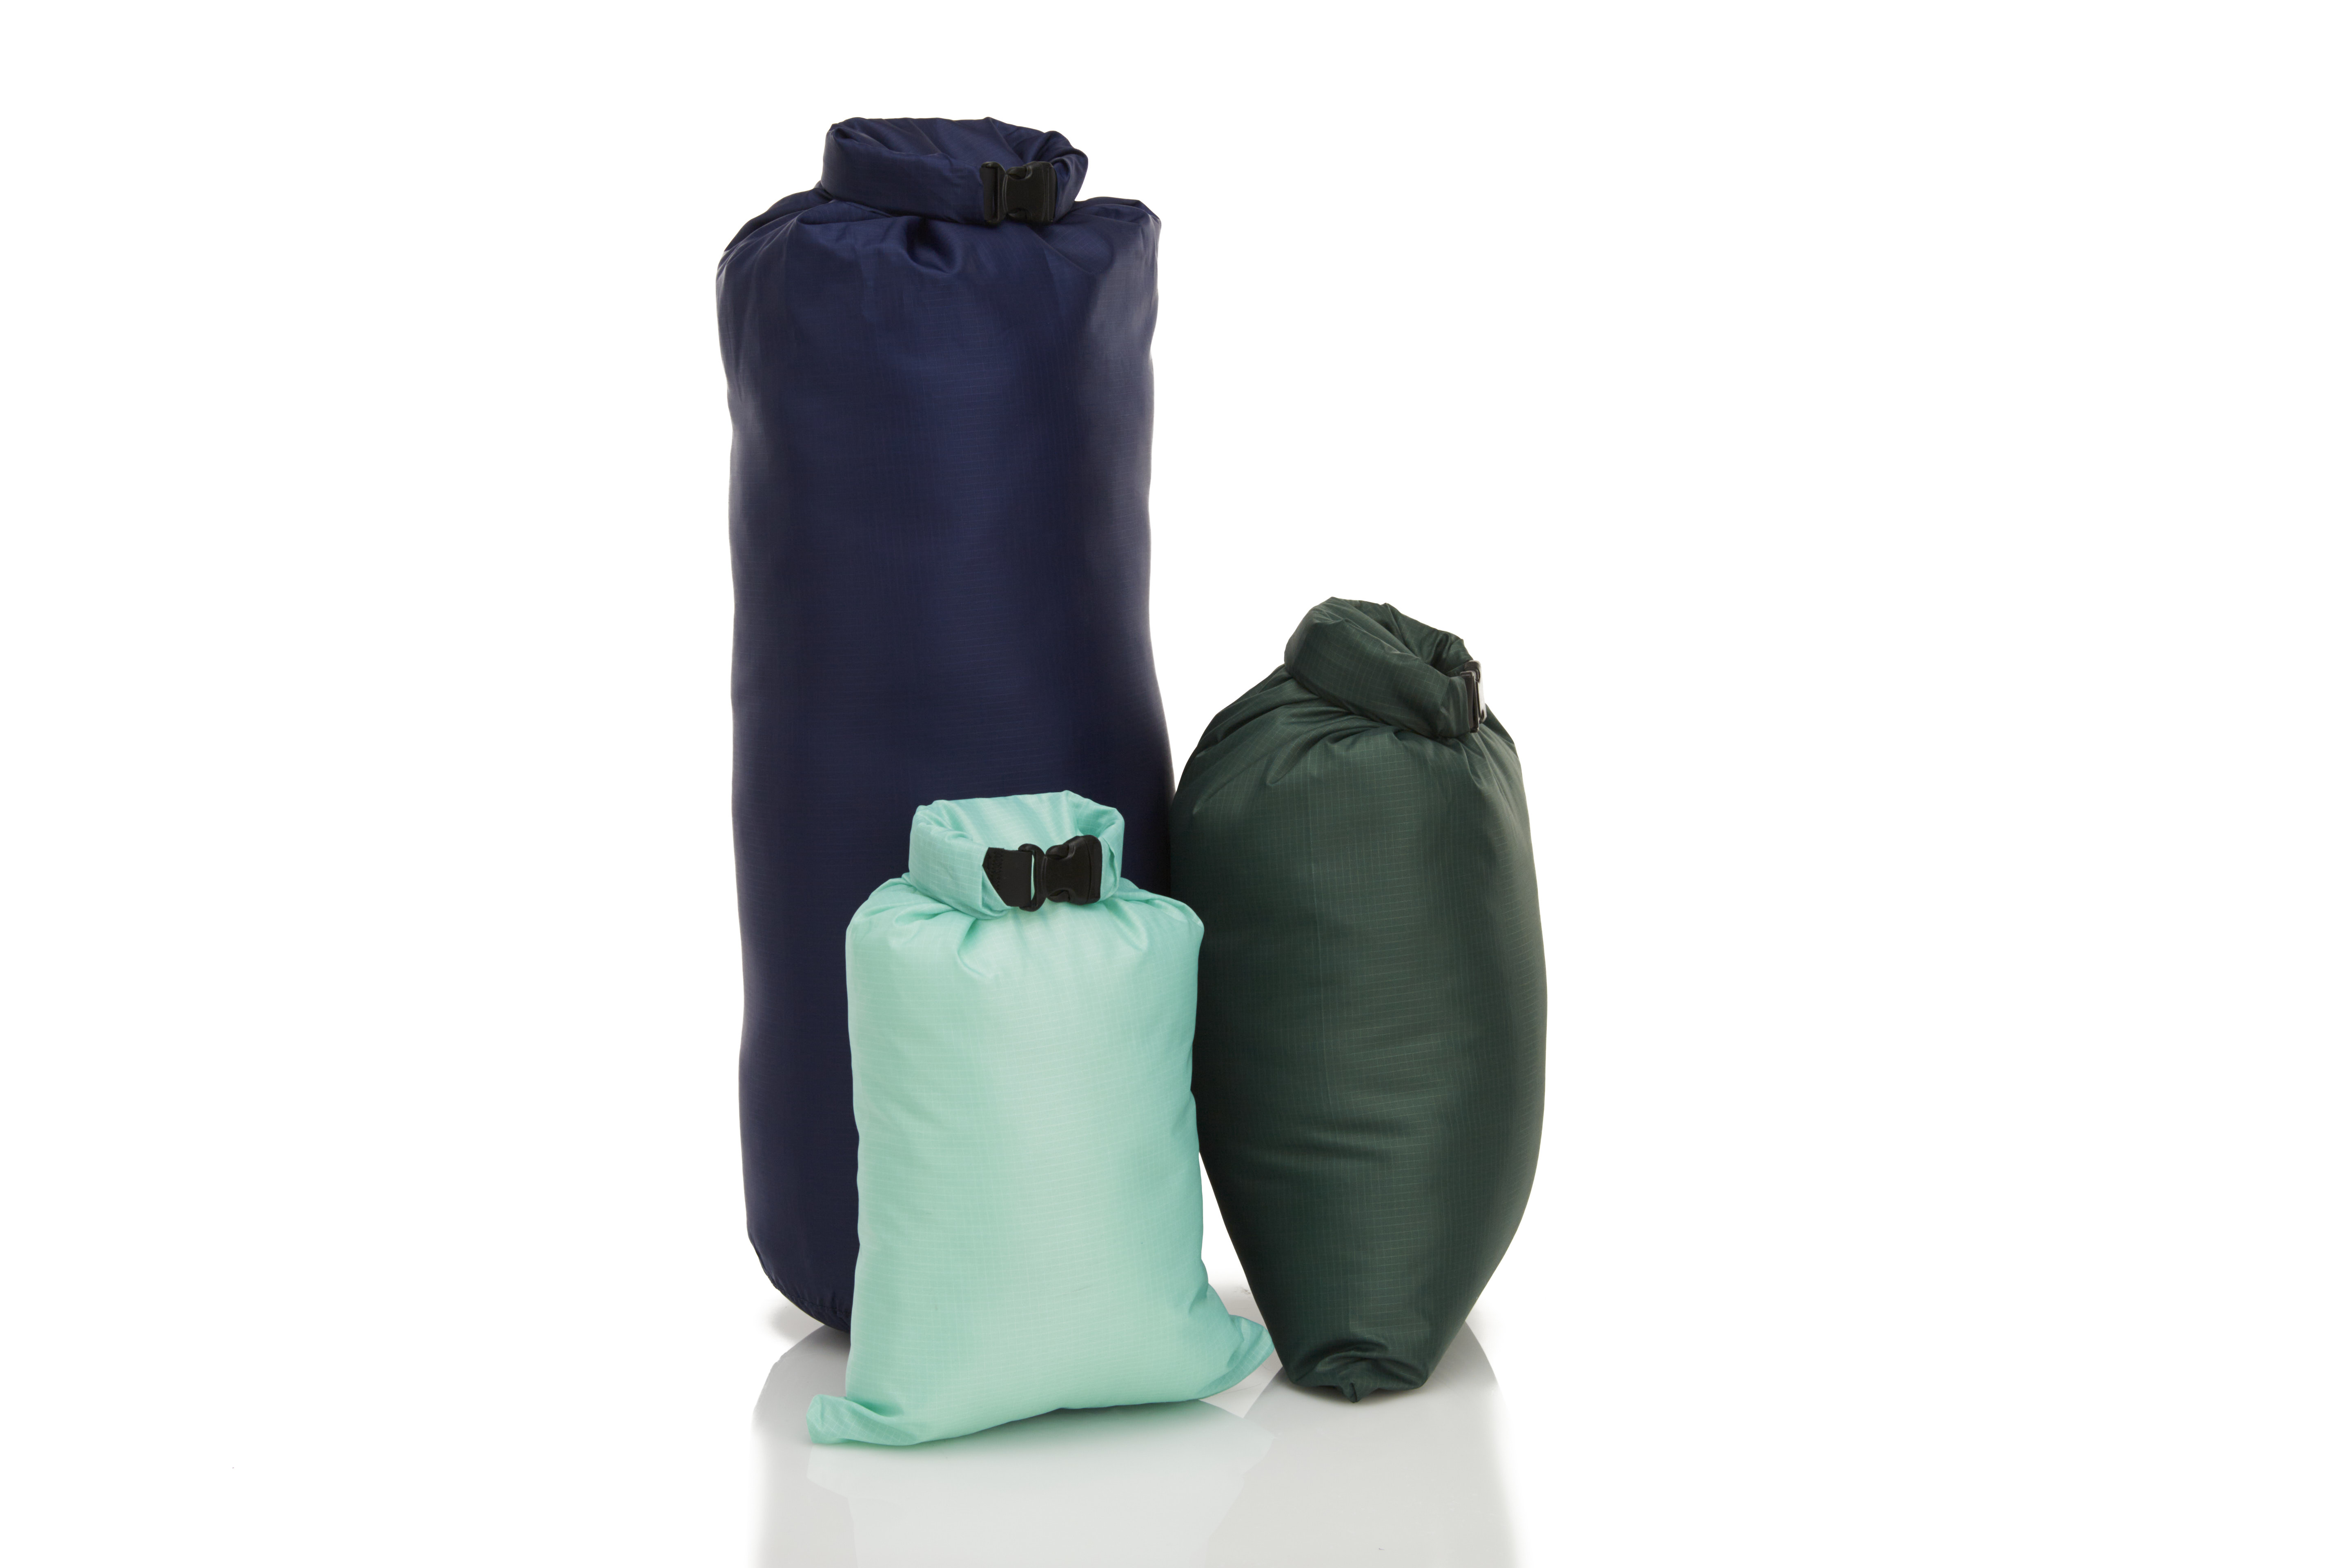 Buy GYMSÅK Premium Waterproof Dry Bags Online – Skog Å Kust